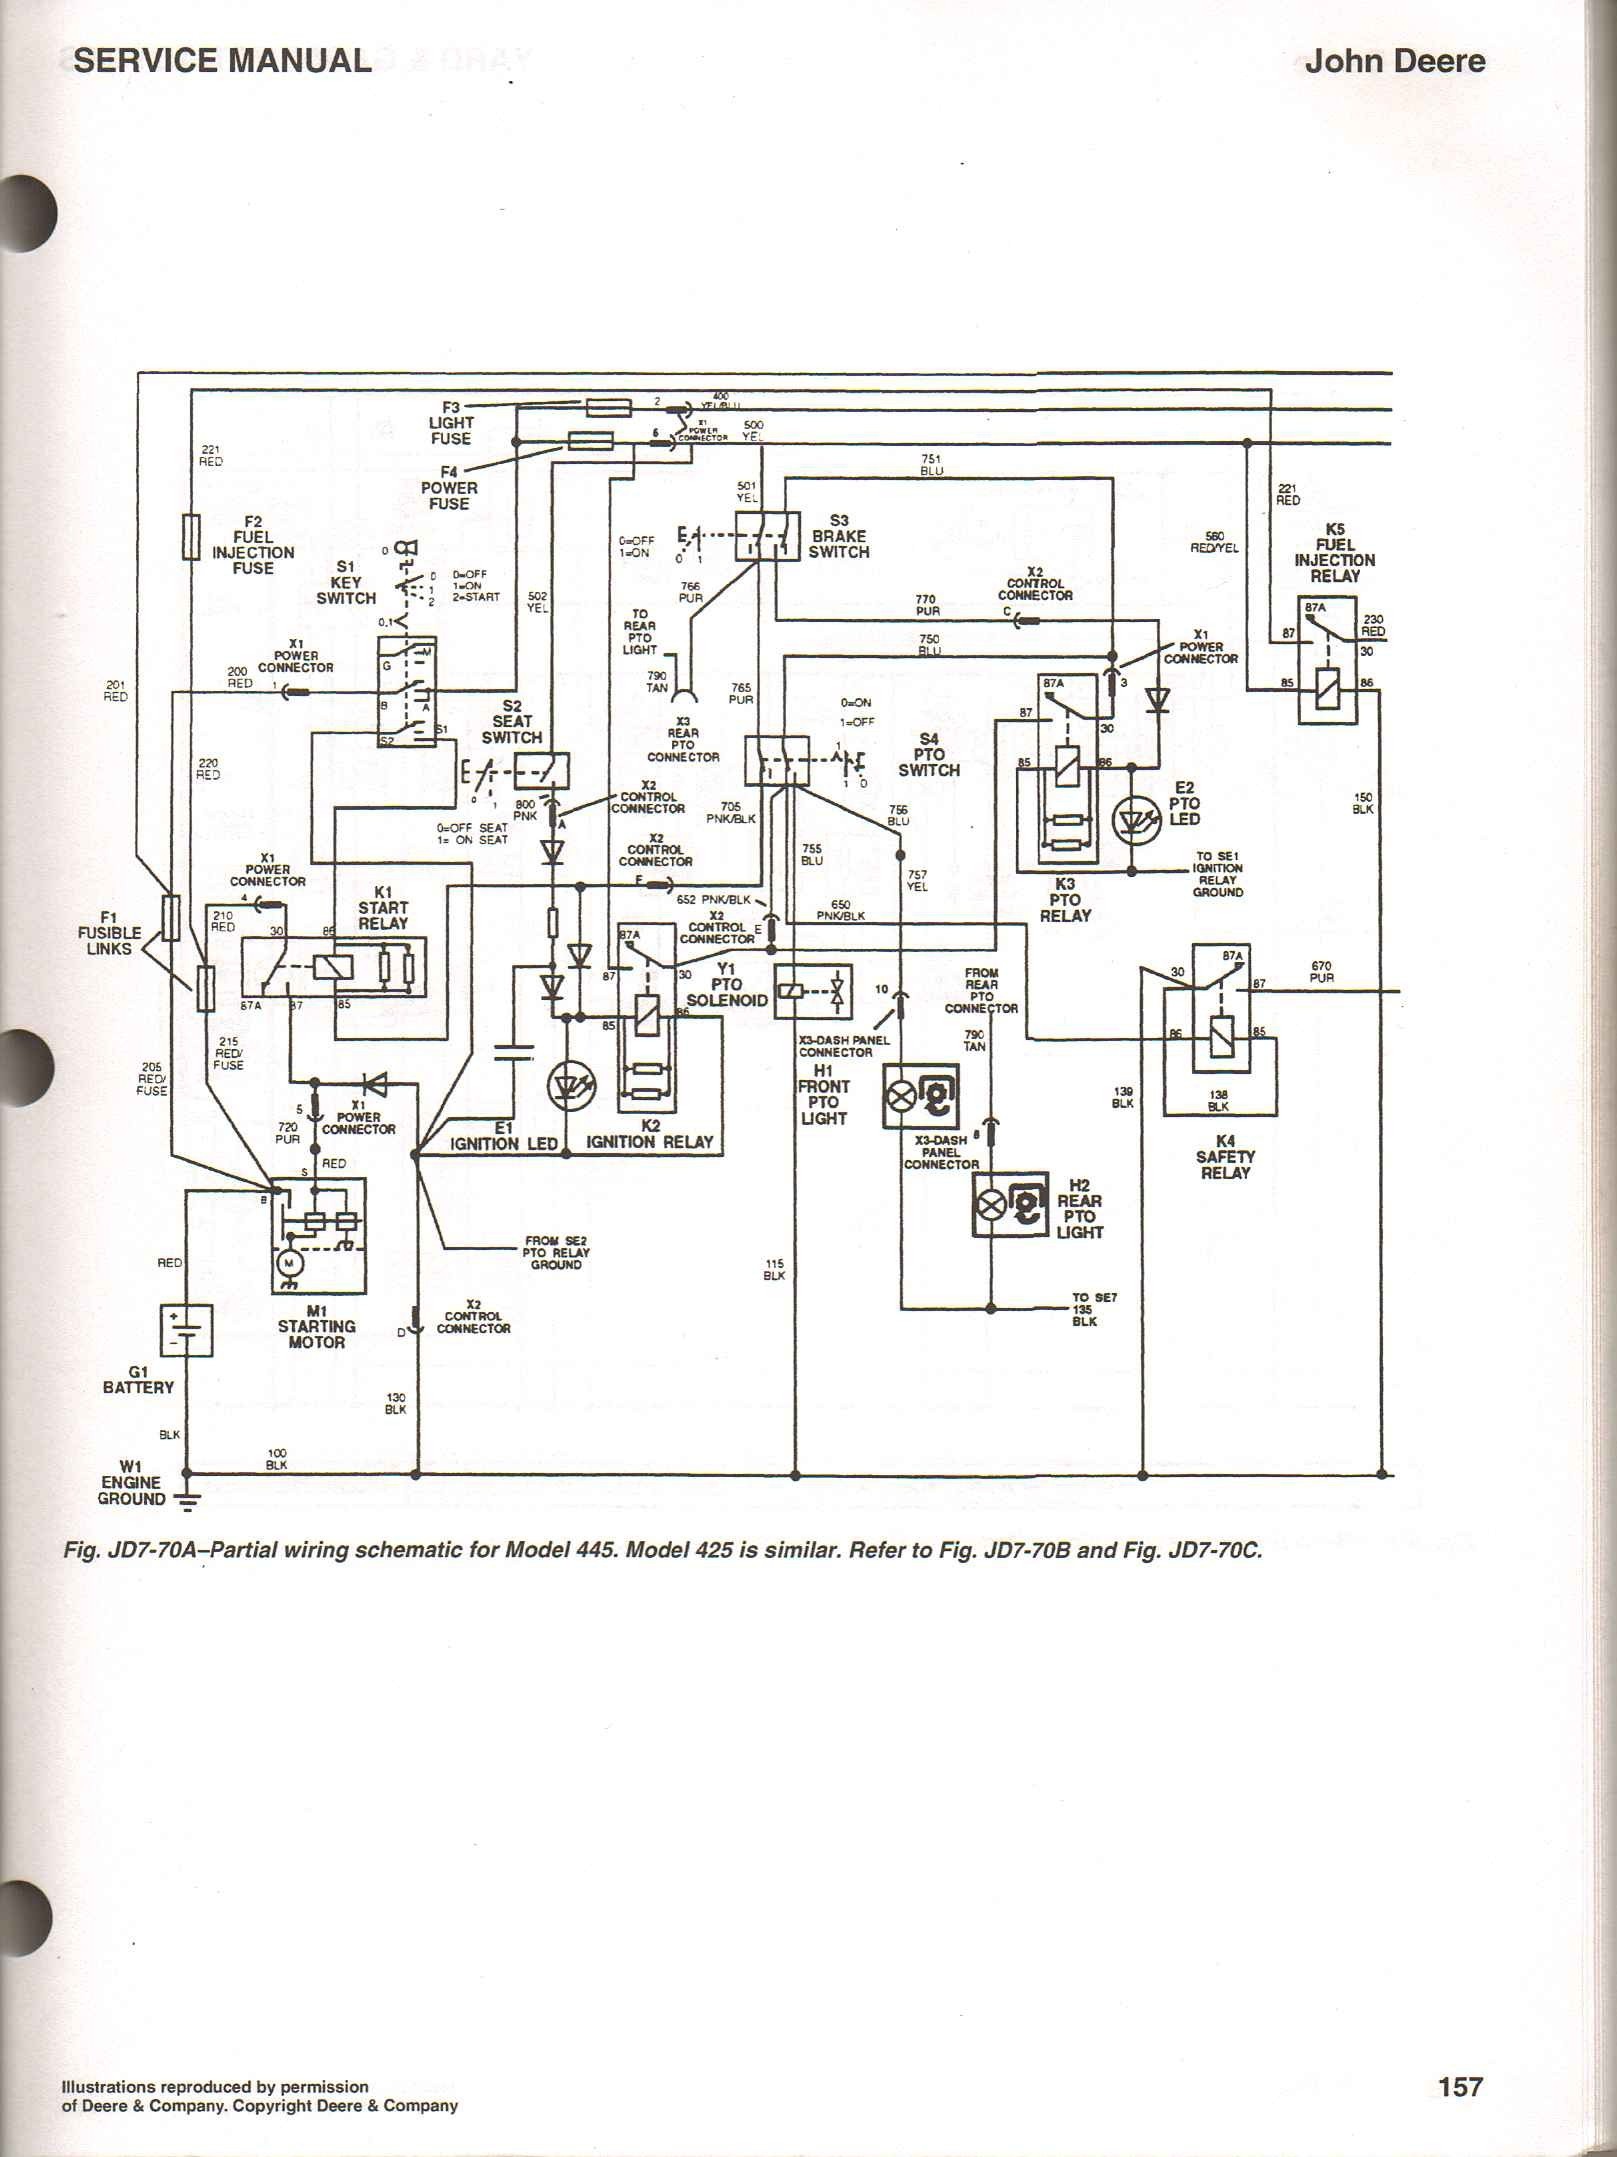 John Deere L130 Wiring Diagram Electrical Circuit John Deere Wiring Diagram F915 Schematic 84 Diagrams Motor L120